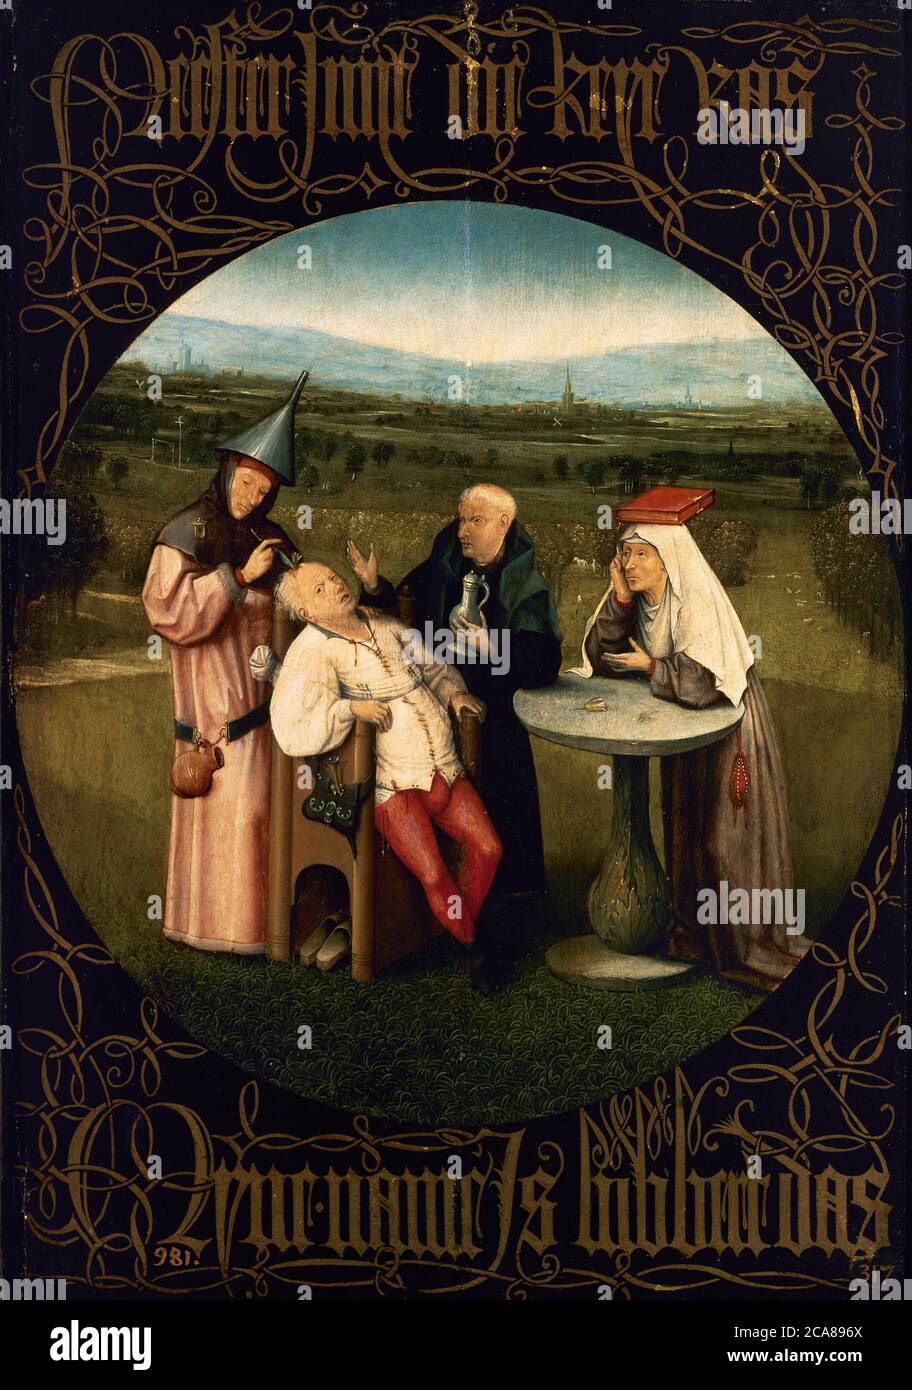 Hieronymus Bosch (1450-1516). Pittore e stampatore olandese, appartenente alla Scuola Fiamminga. L'estrazione della pietra della Madness, 1501-1505. Olio su pannelli di quercia (48,5 x 34,5 cm). Museo del Prado. Madrid. Spagna. Foto Stock